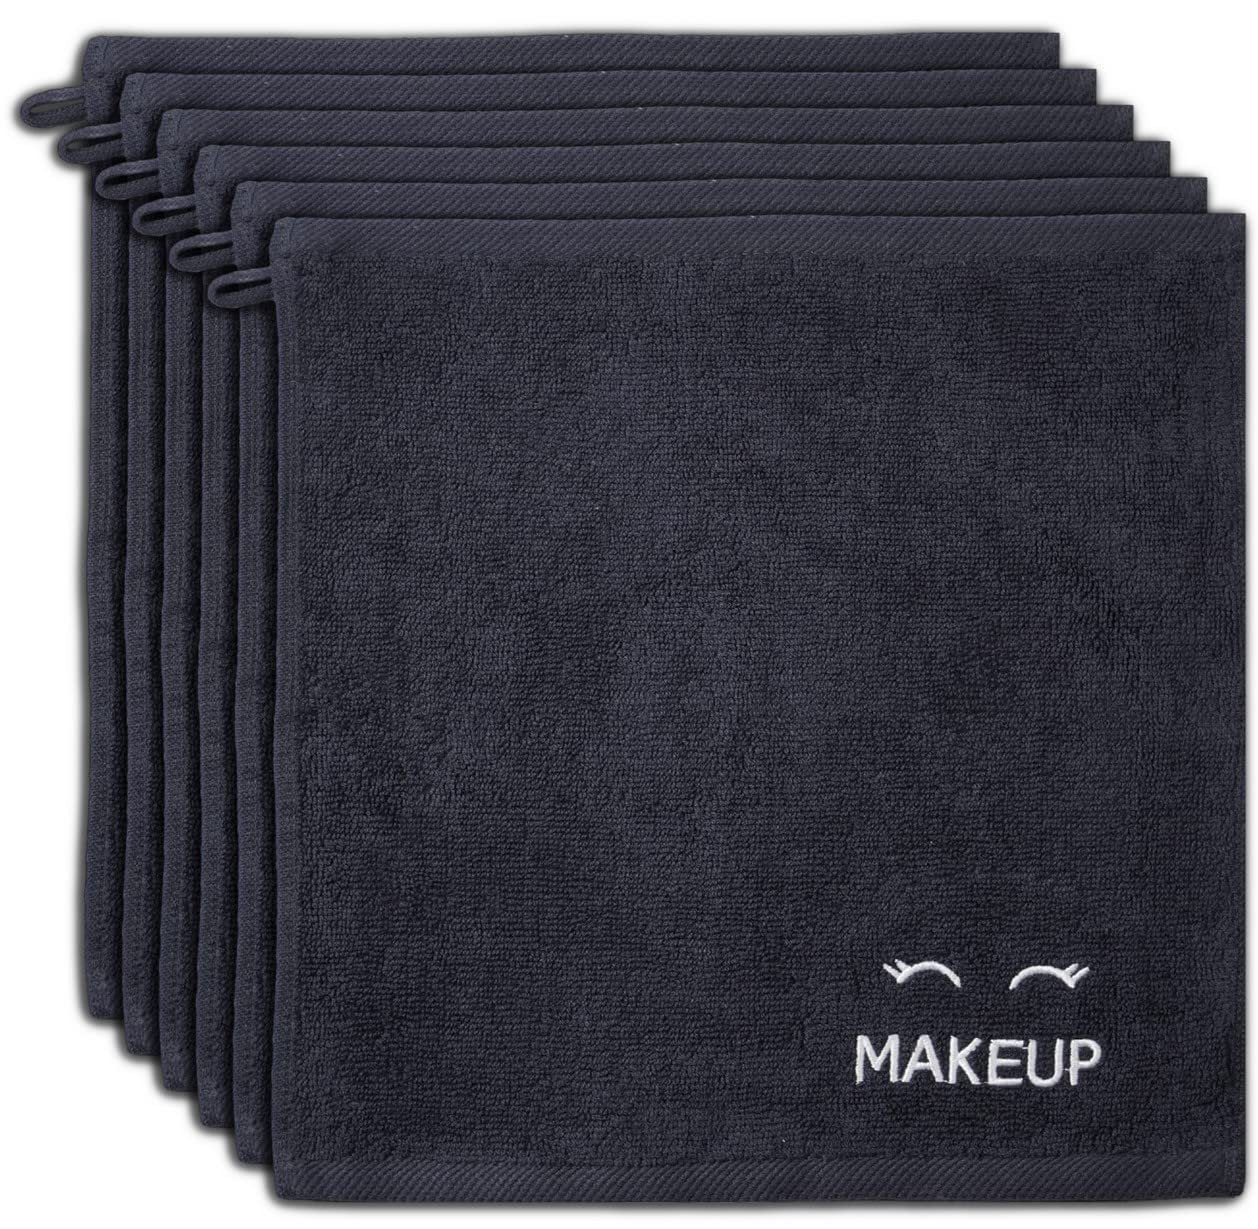 6 Pack Bleach Safe Black Makeup Towels | Soft Cotton Washcloths for Make up Removal